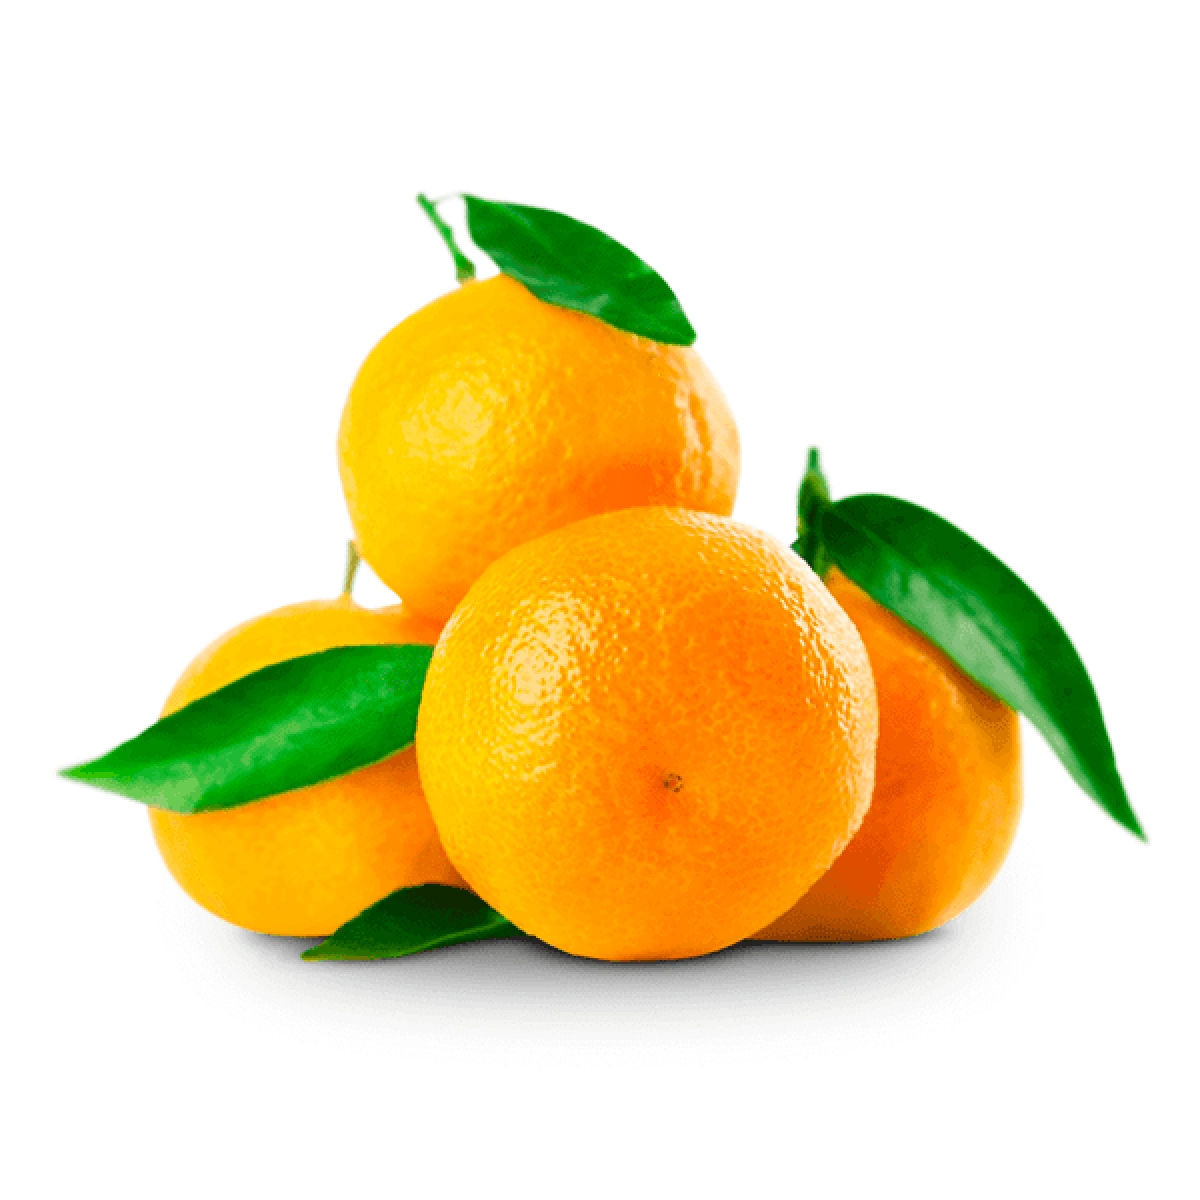 М мандарин. Мандарин оранжевый Клементин. Апельсин на белом фоне. Мандарин на прозрачном фоне.